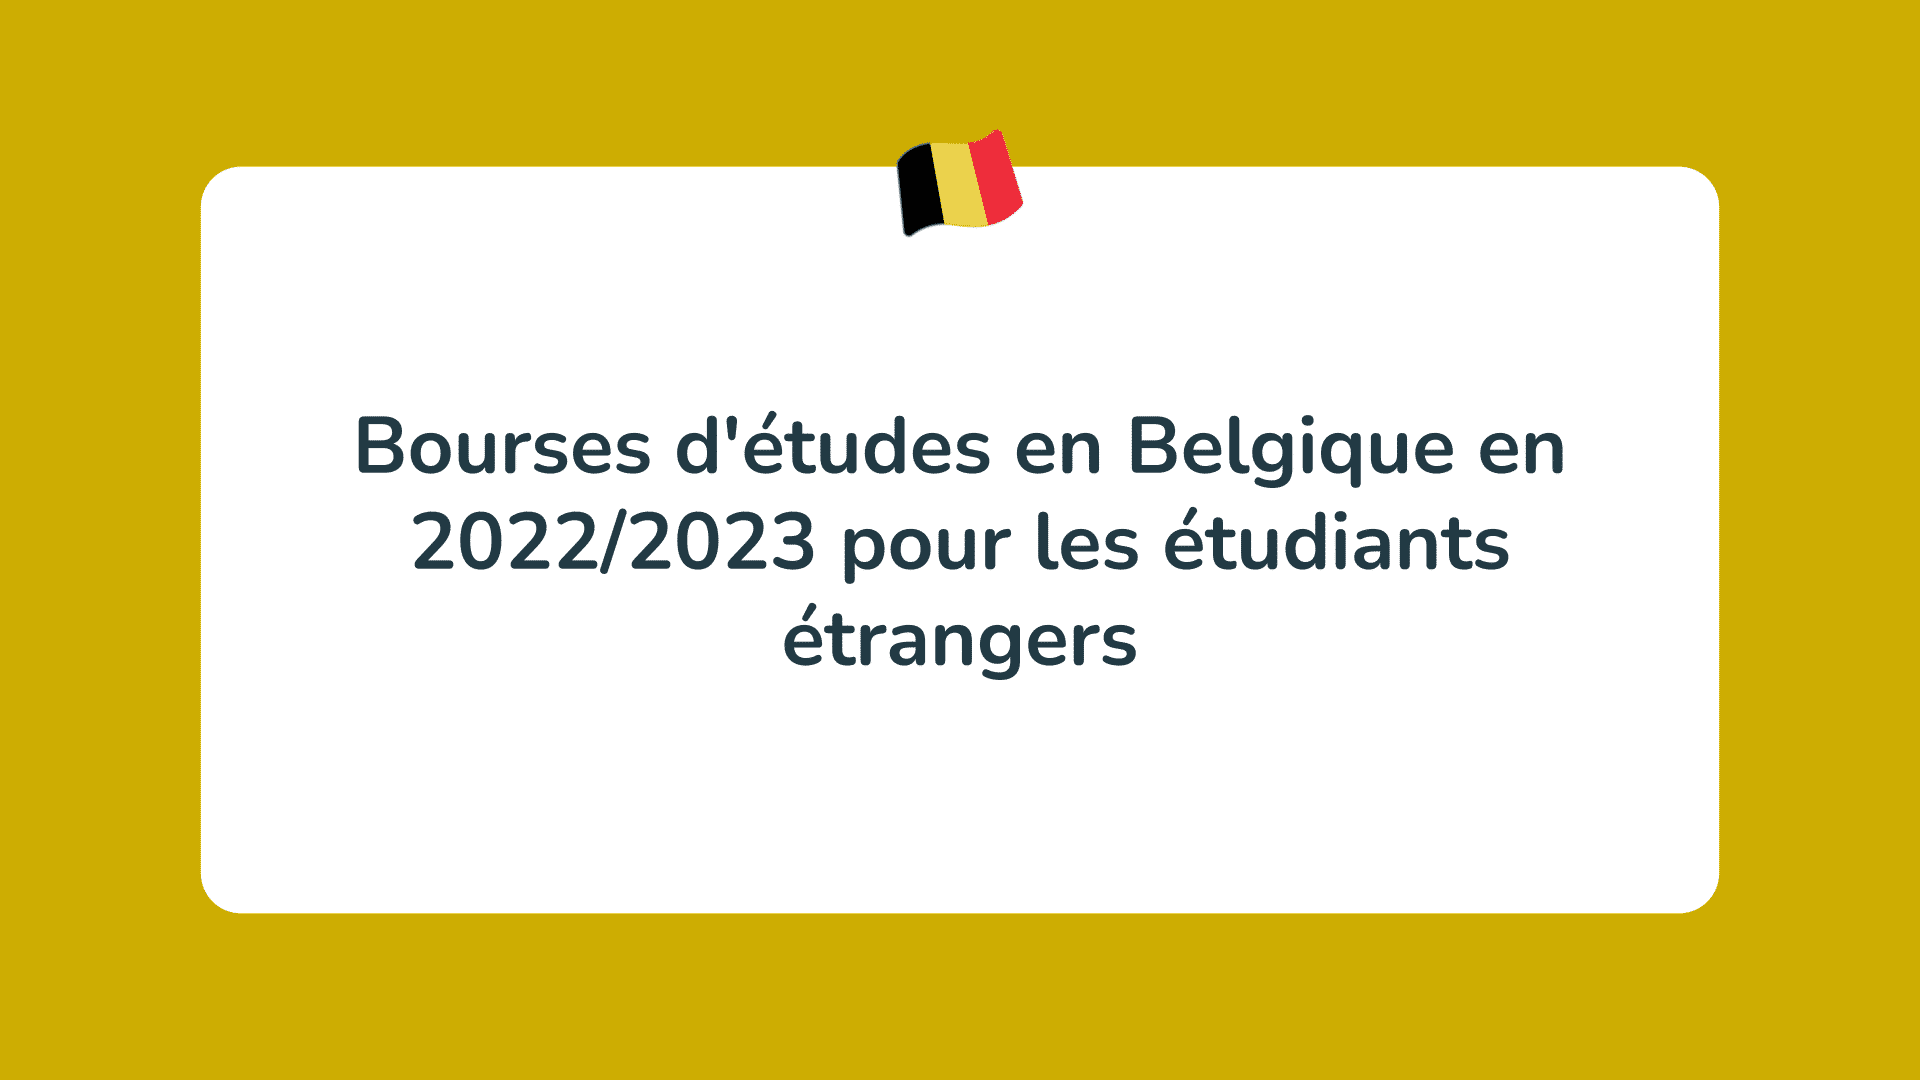 Bourses d'études en Belgique en 2022-2023 pour les étudiants étrangers